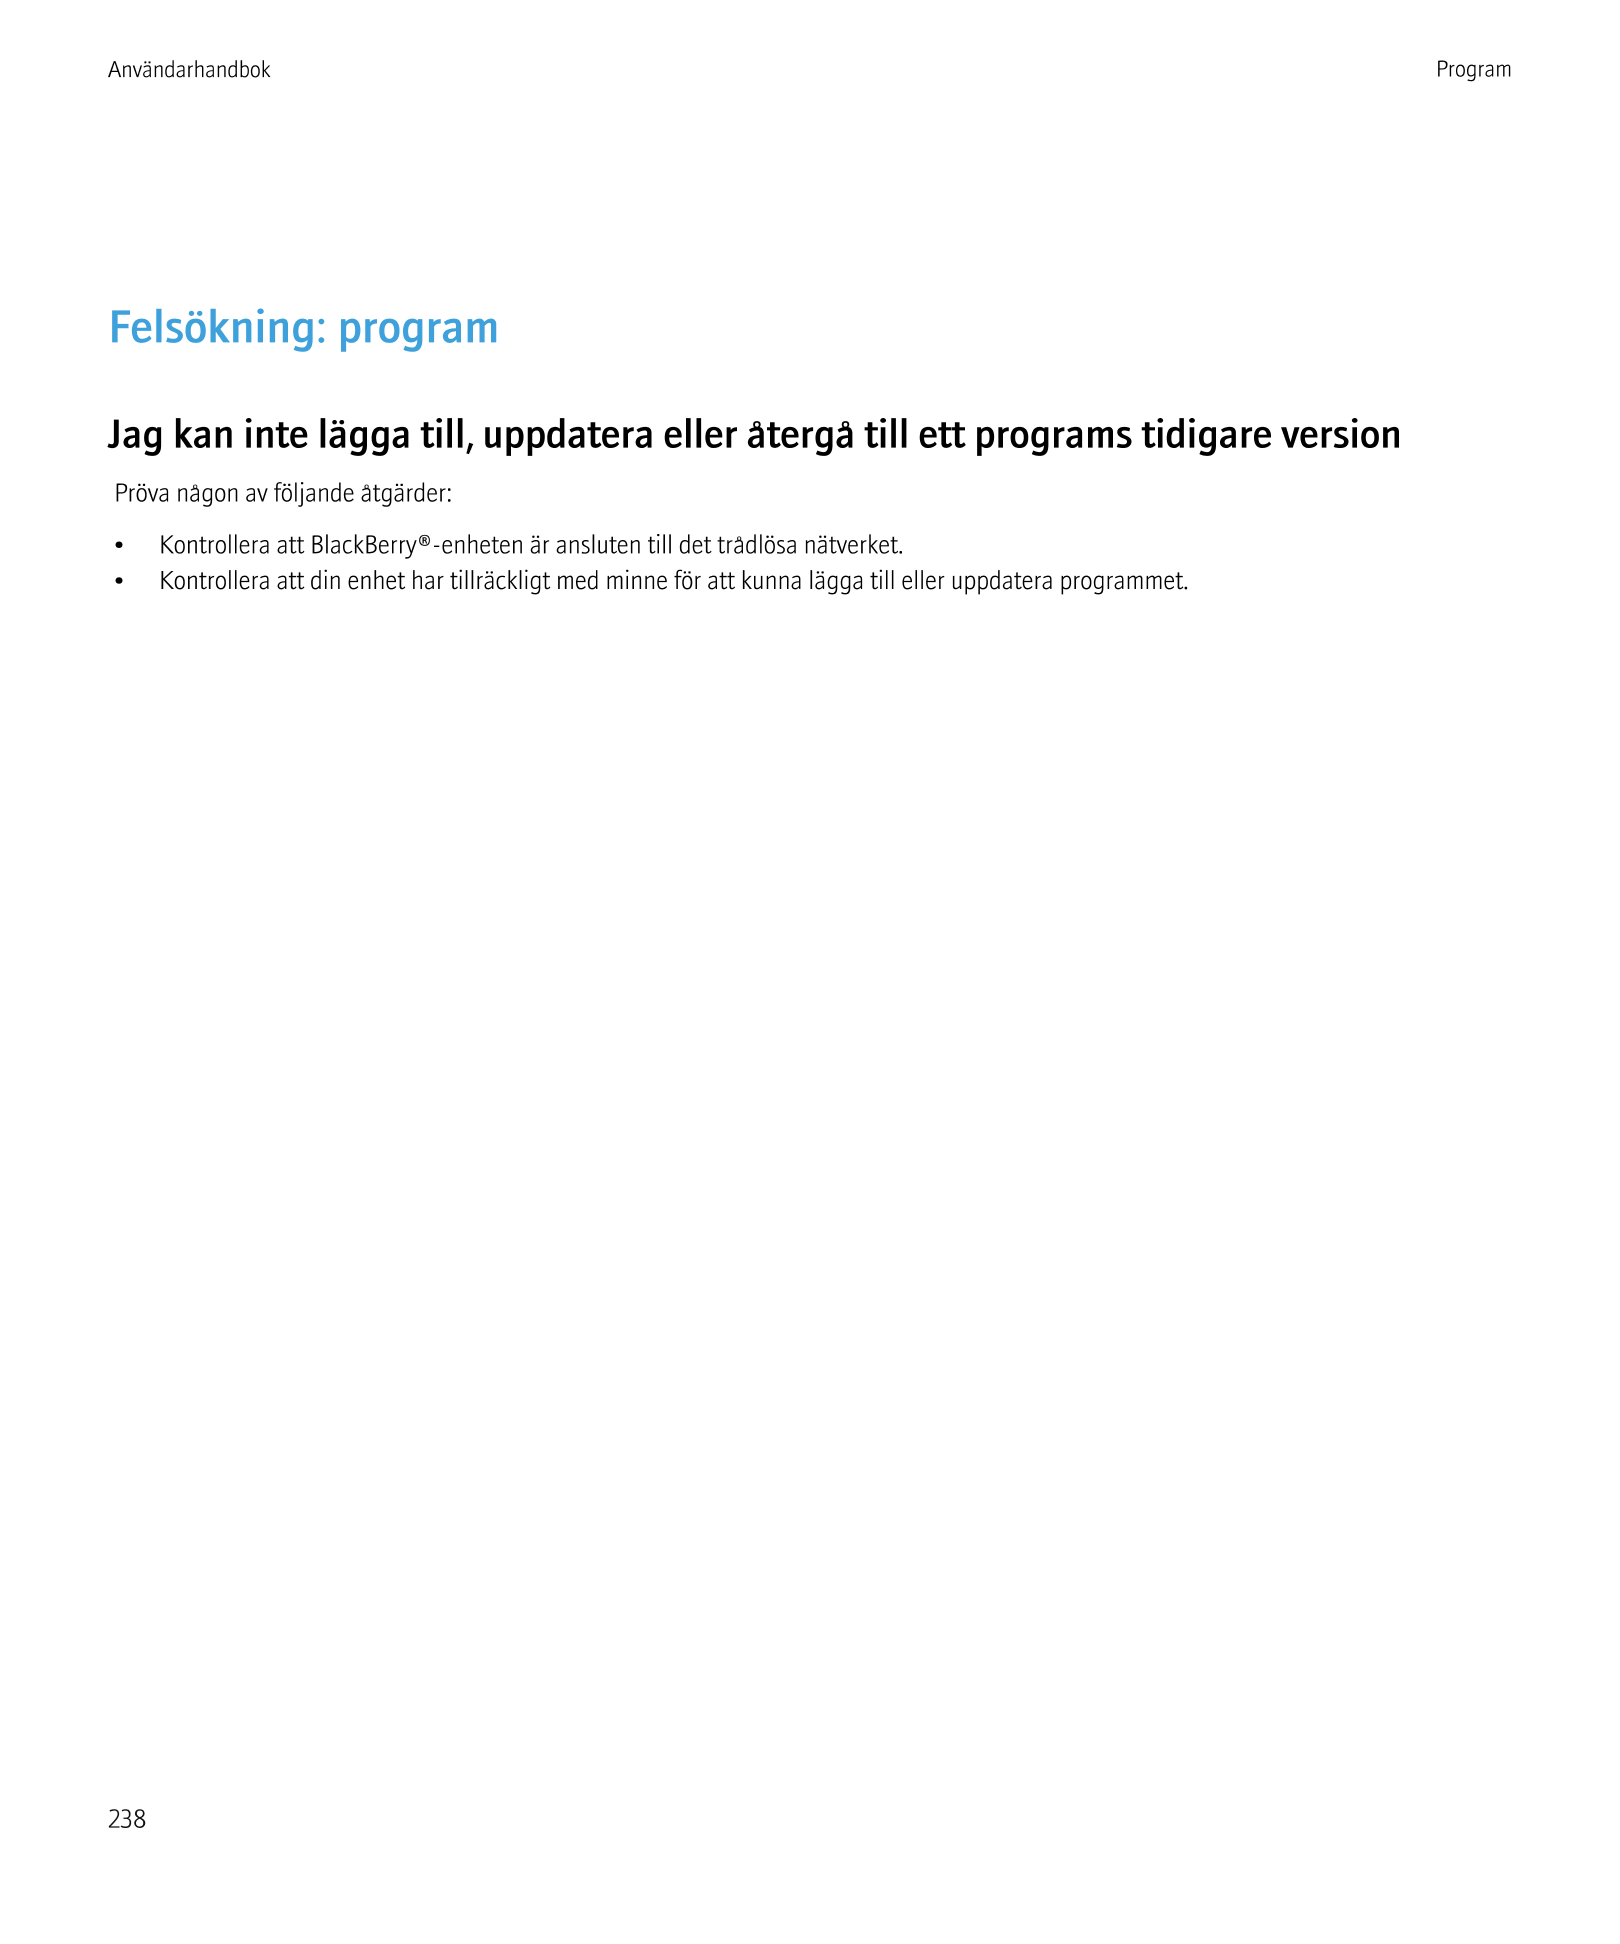 Användarhandbok Program
Felsökning: program
Jag kan inte lägga till, uppdatera eller återgå till ett programs tidigare version
P